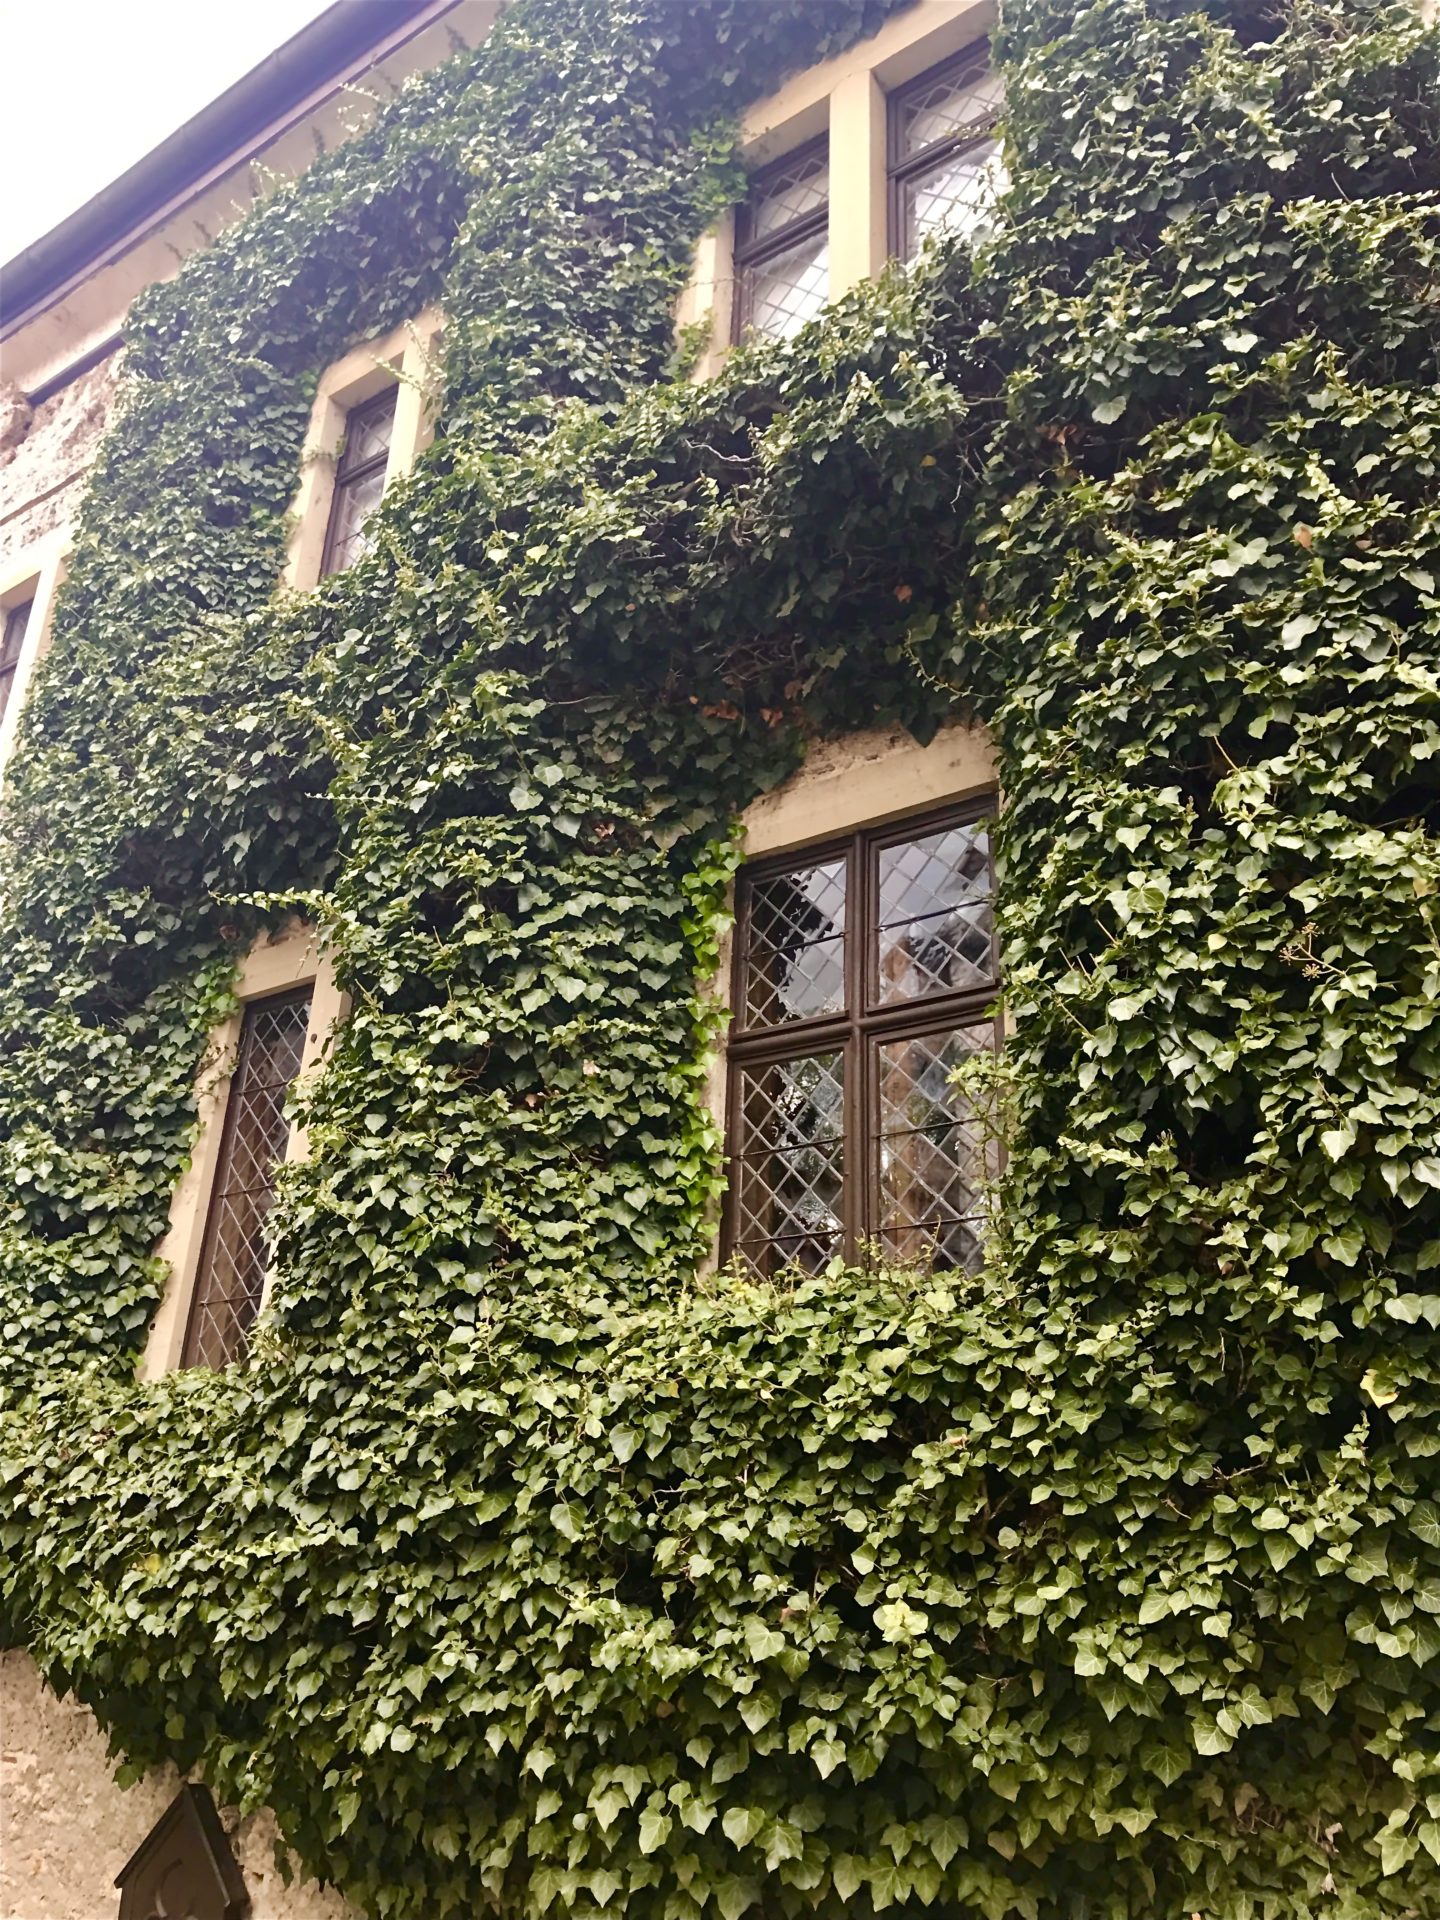 Ivy-covered building in the courtyard of Schloss Lichtenstein